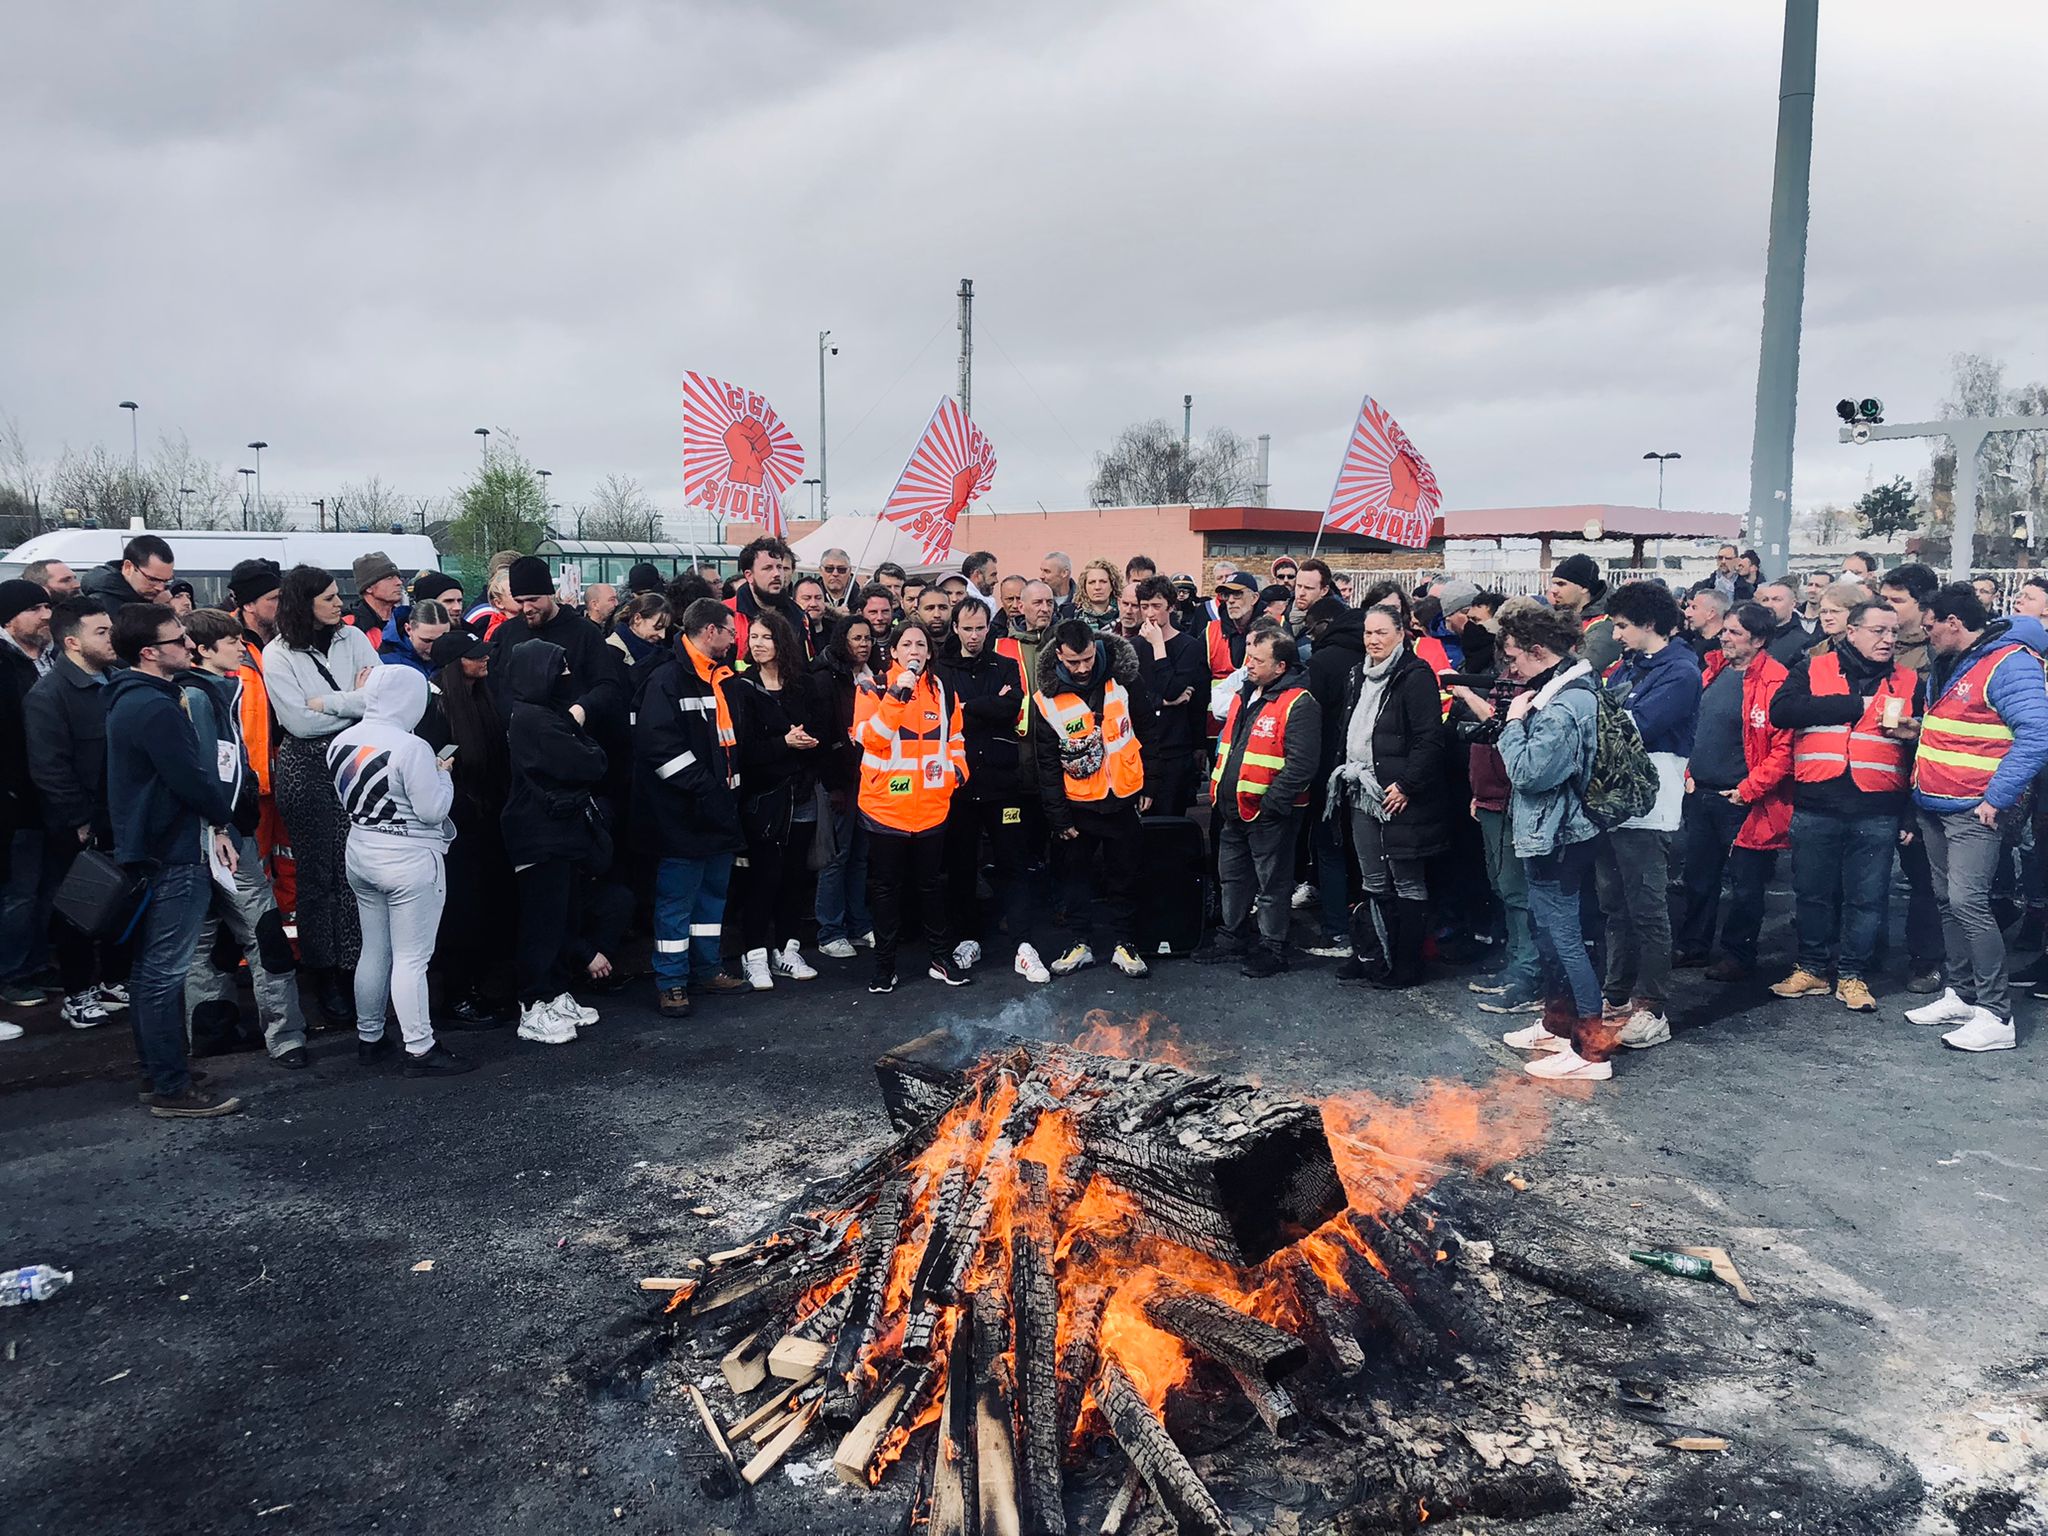 Raffinerie de Normandie : énorme démonstration de solidarité face aux réquisitions